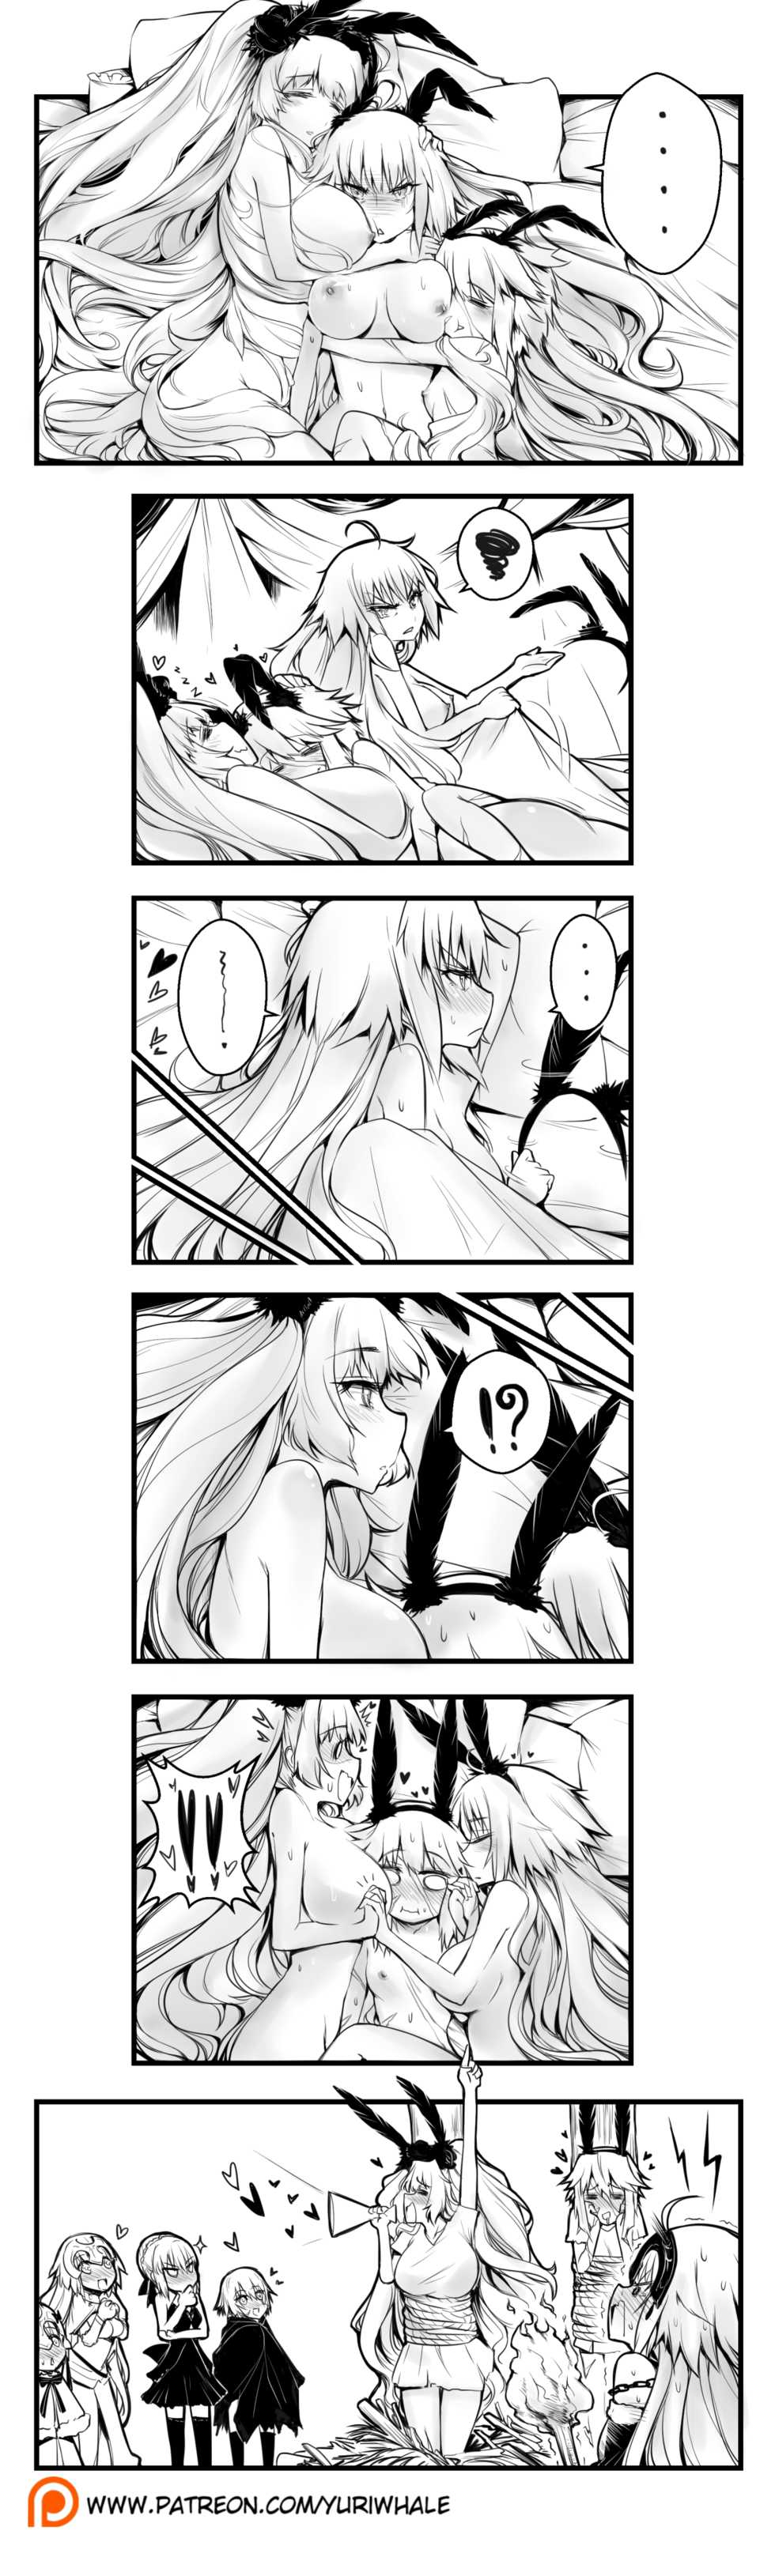 [Yuriwhale] Sabishii Bunny (Fate/Grand Order) - Page 3